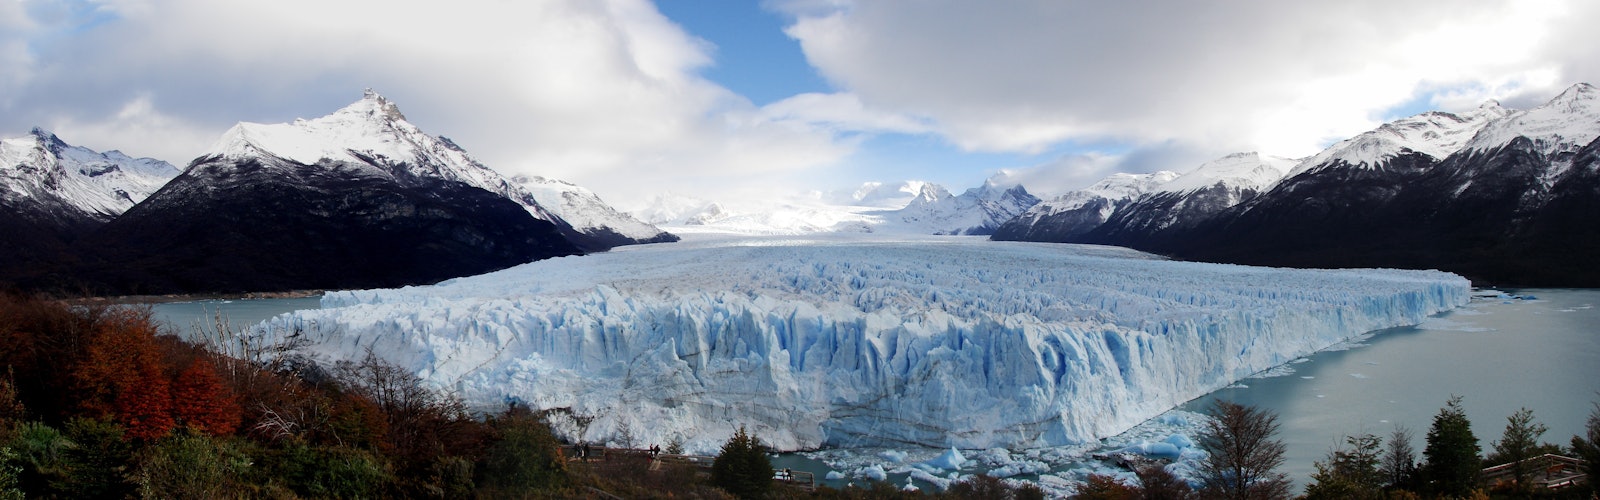 patagonia-argentina-1249202